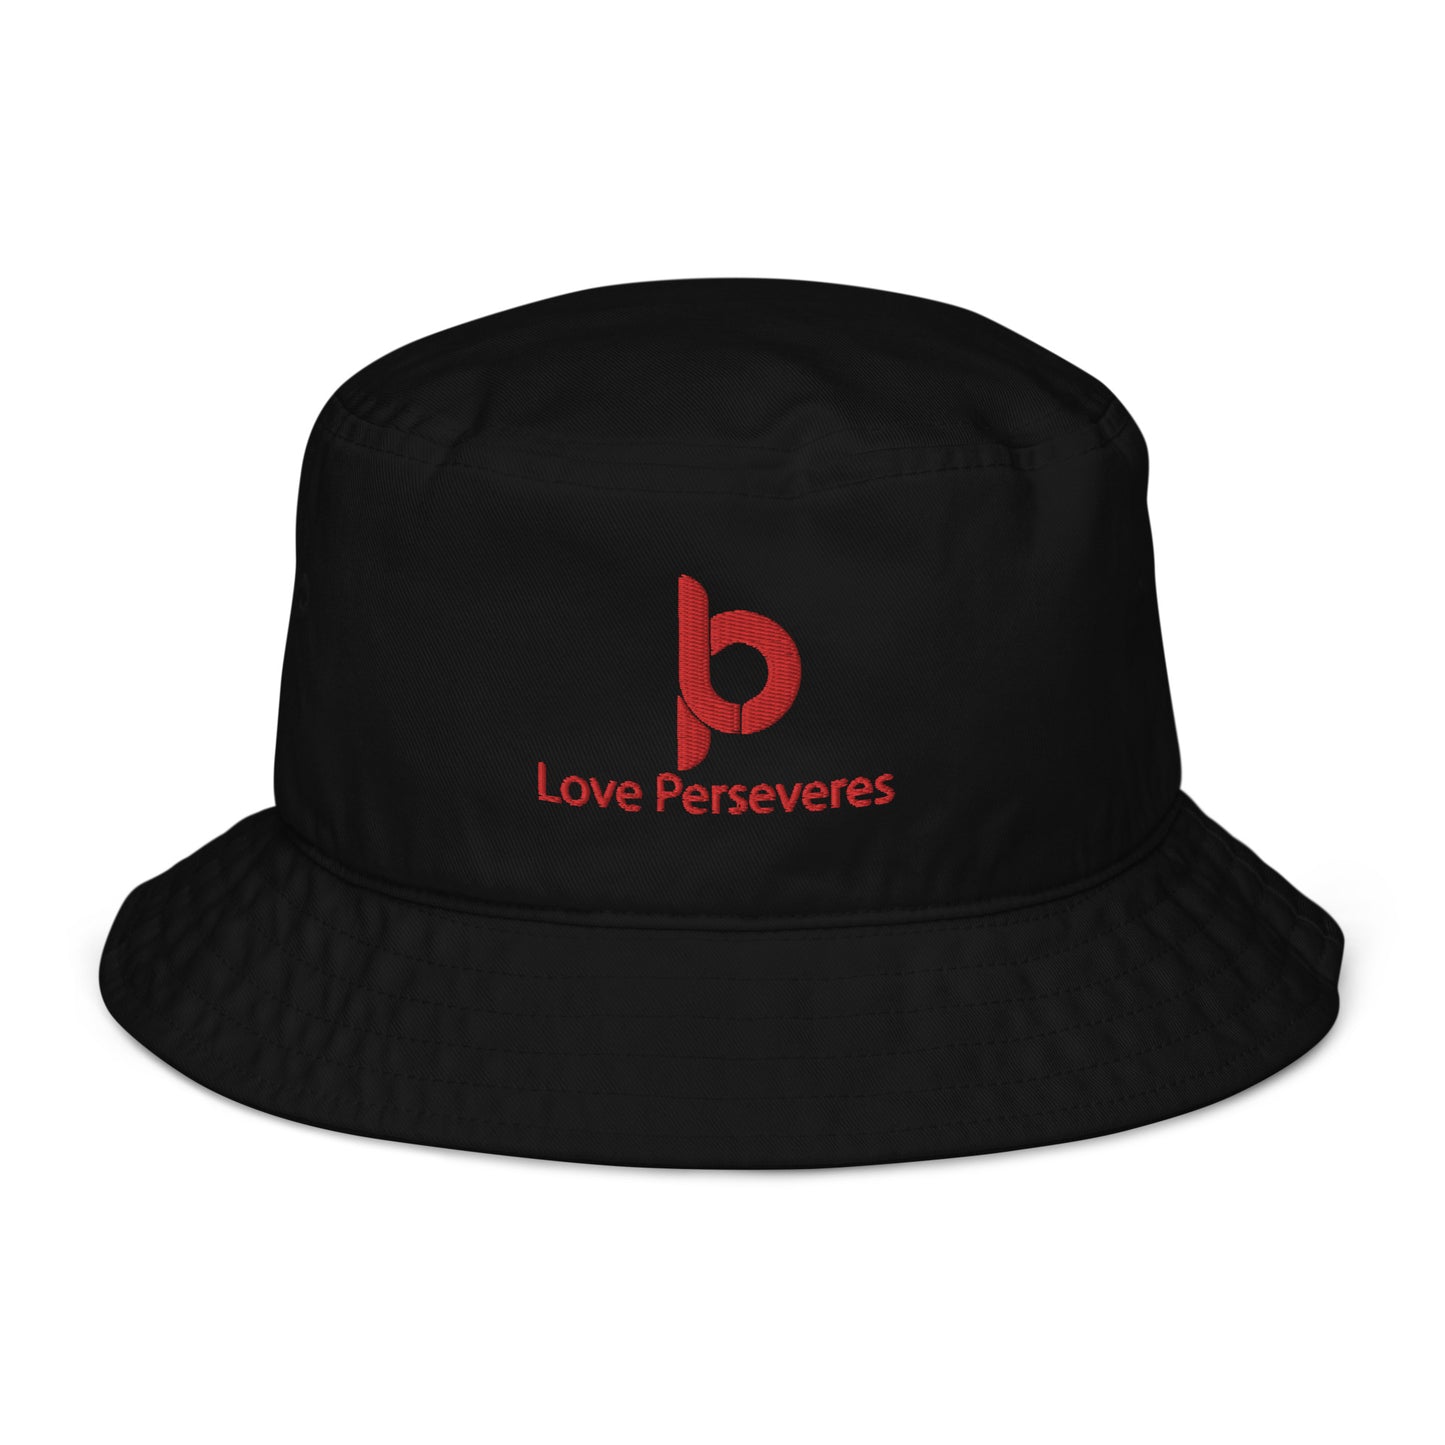 Love Perseveres bucket hat